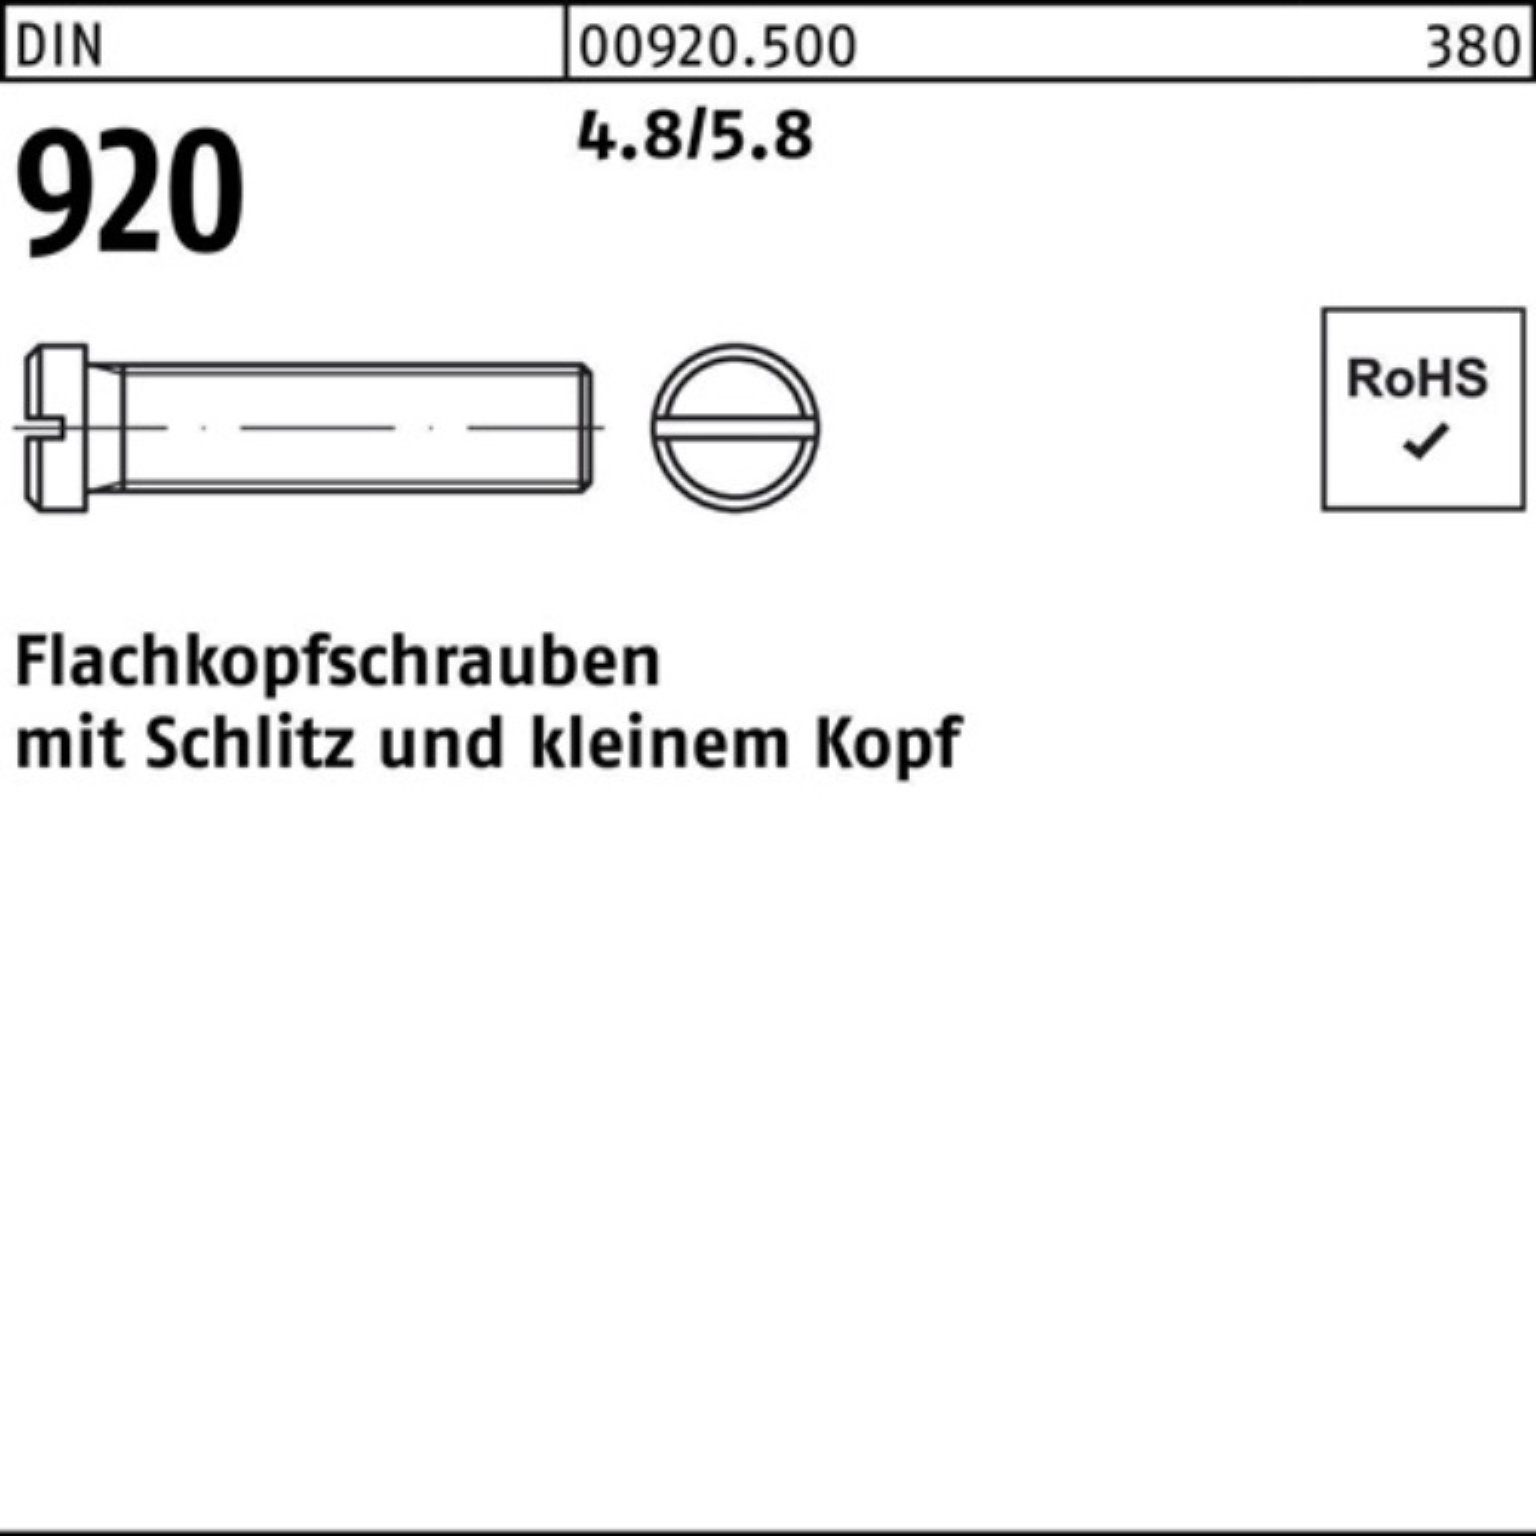 Reyher Schraube 100er Pack Flachkopfschraube DIN 920 Schlitz M4x 10 4.8/5.8 100 Stück